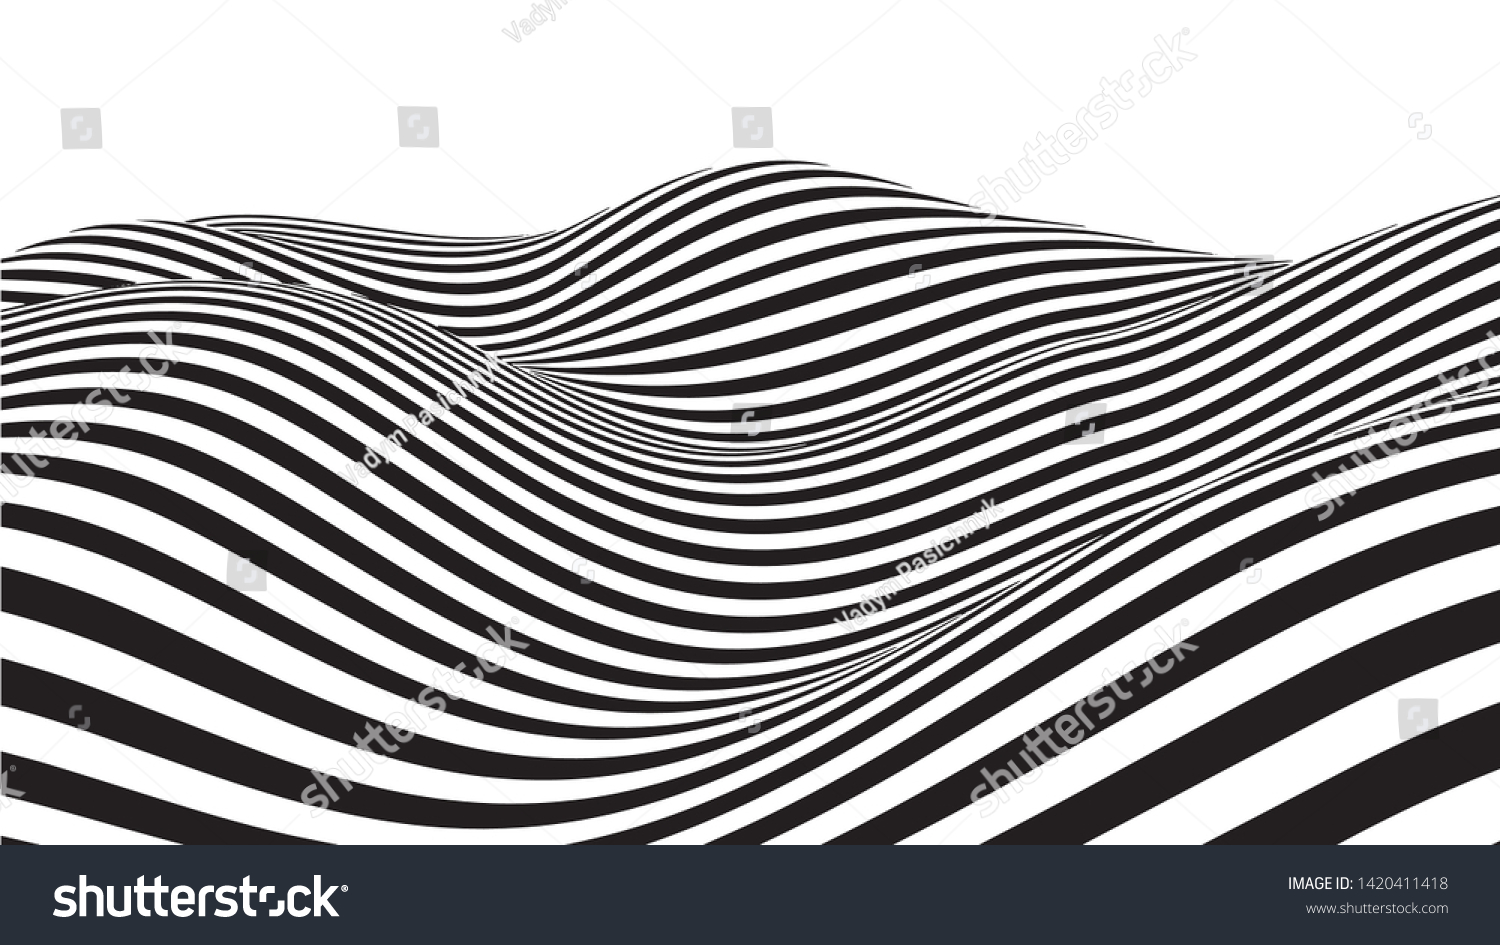 錯視波 抽象的な3d白黒のイラスト 波状の歪み効果を持つ 横線の縞模様または背景 ベクターイラスト のベクター画像素材 ロイヤリティフリー